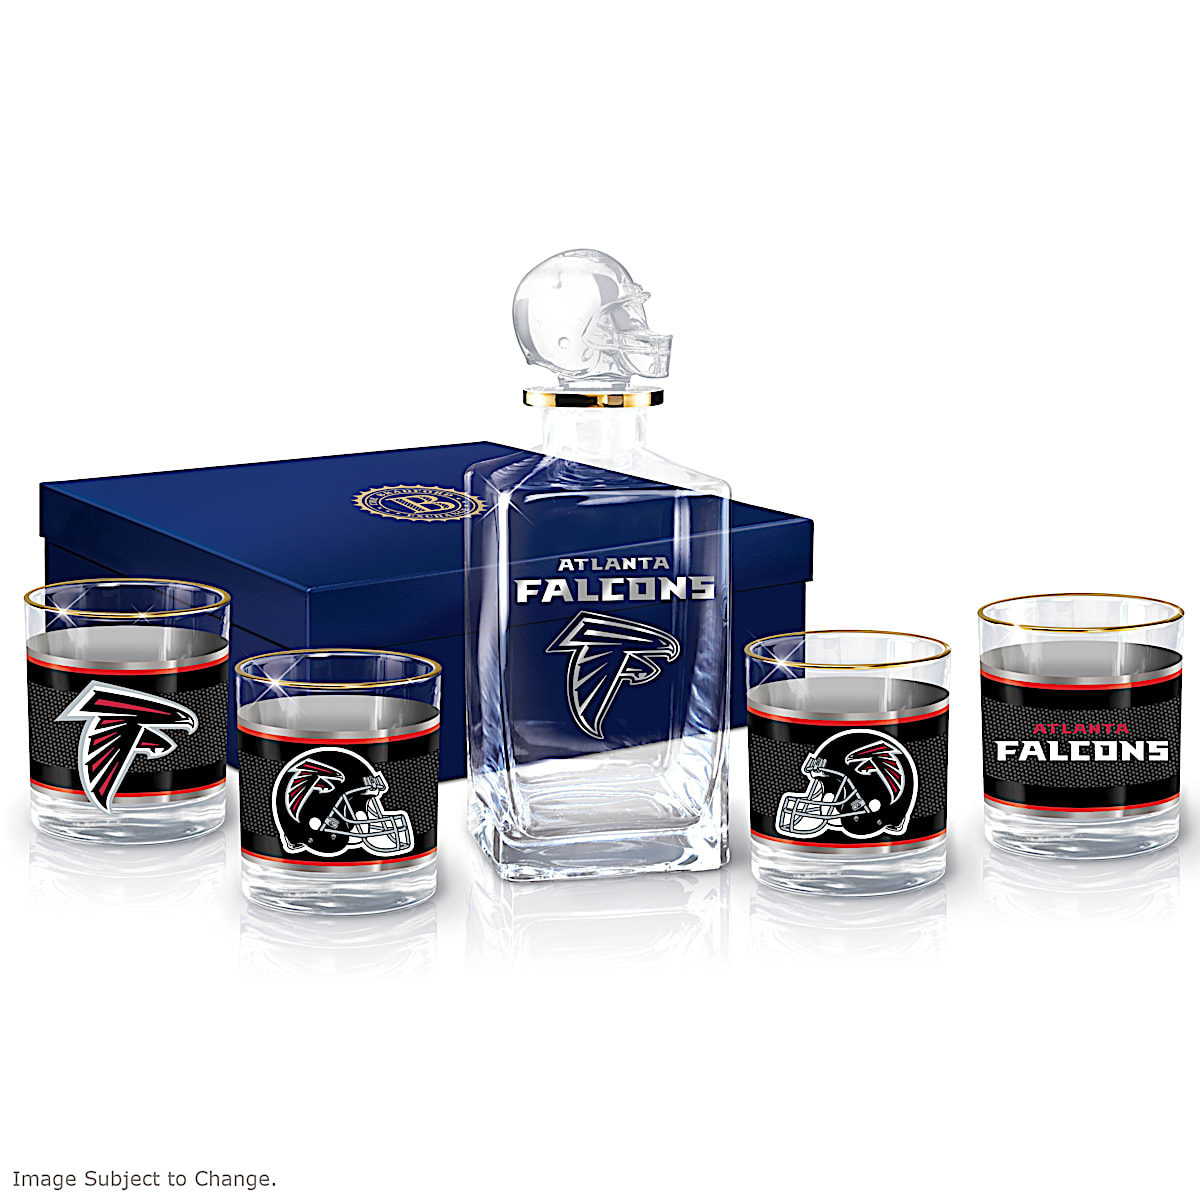 Atlanta Falcons Decanter Gift Set with Wood Gift Box - Football